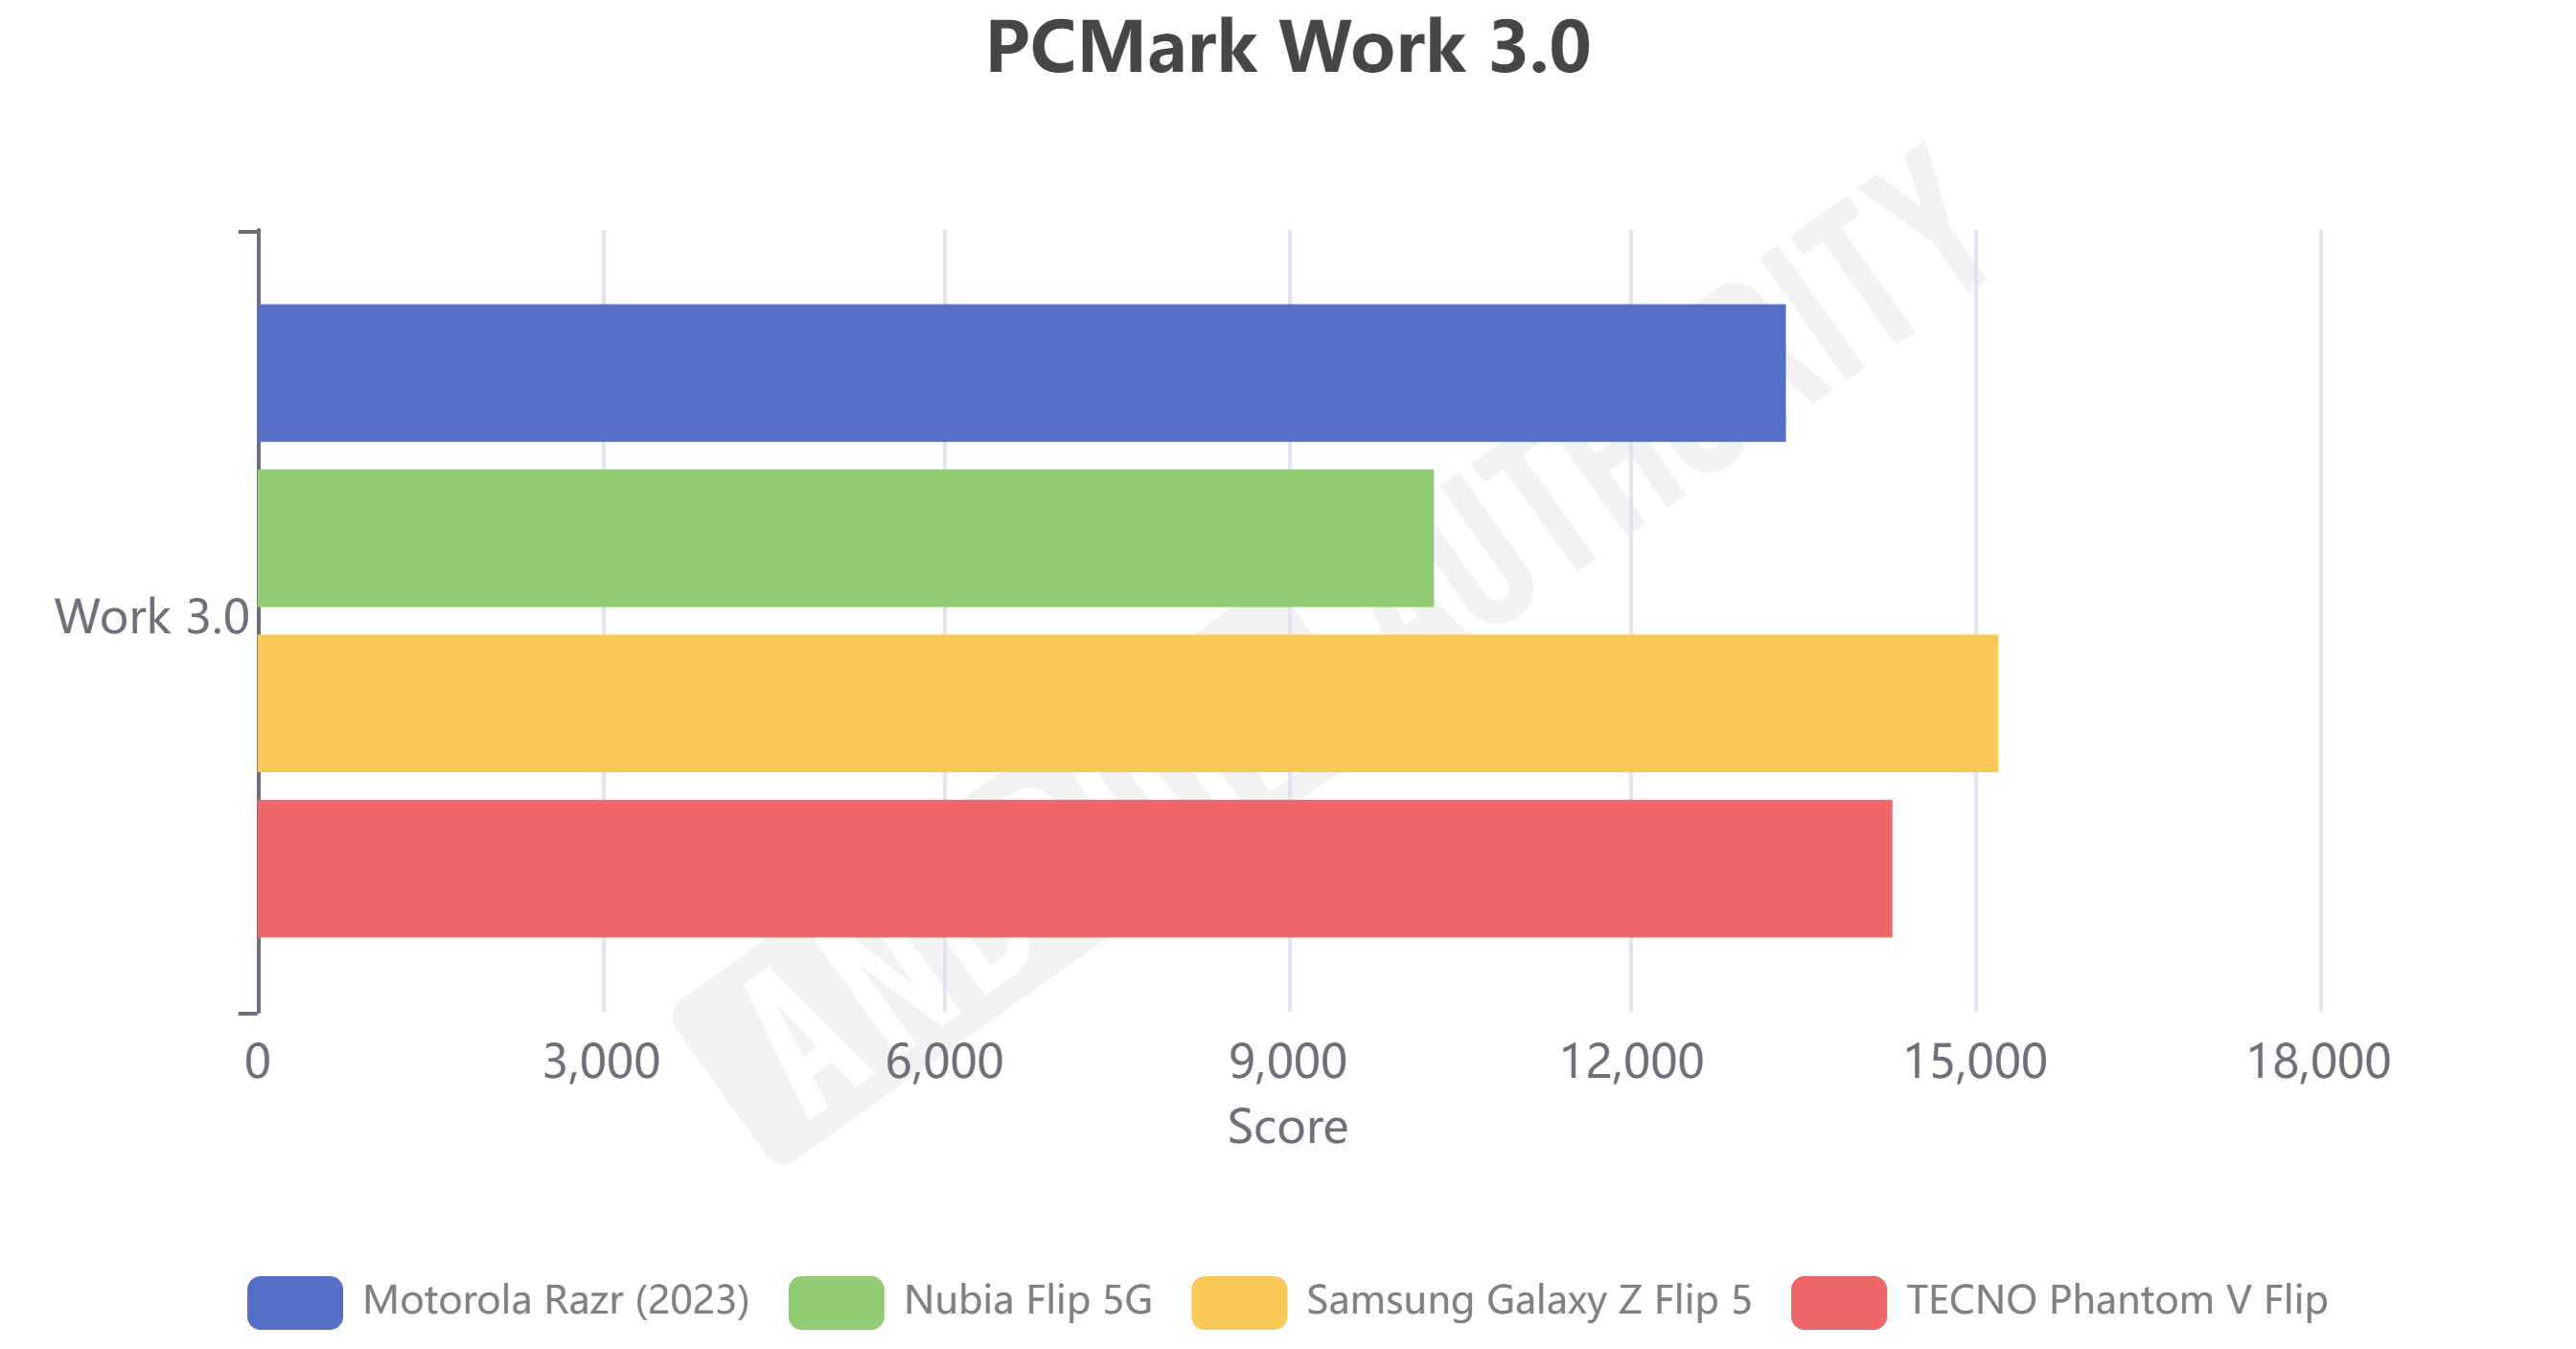 Nubia Flip 5G PCMark Work 3.0 results.